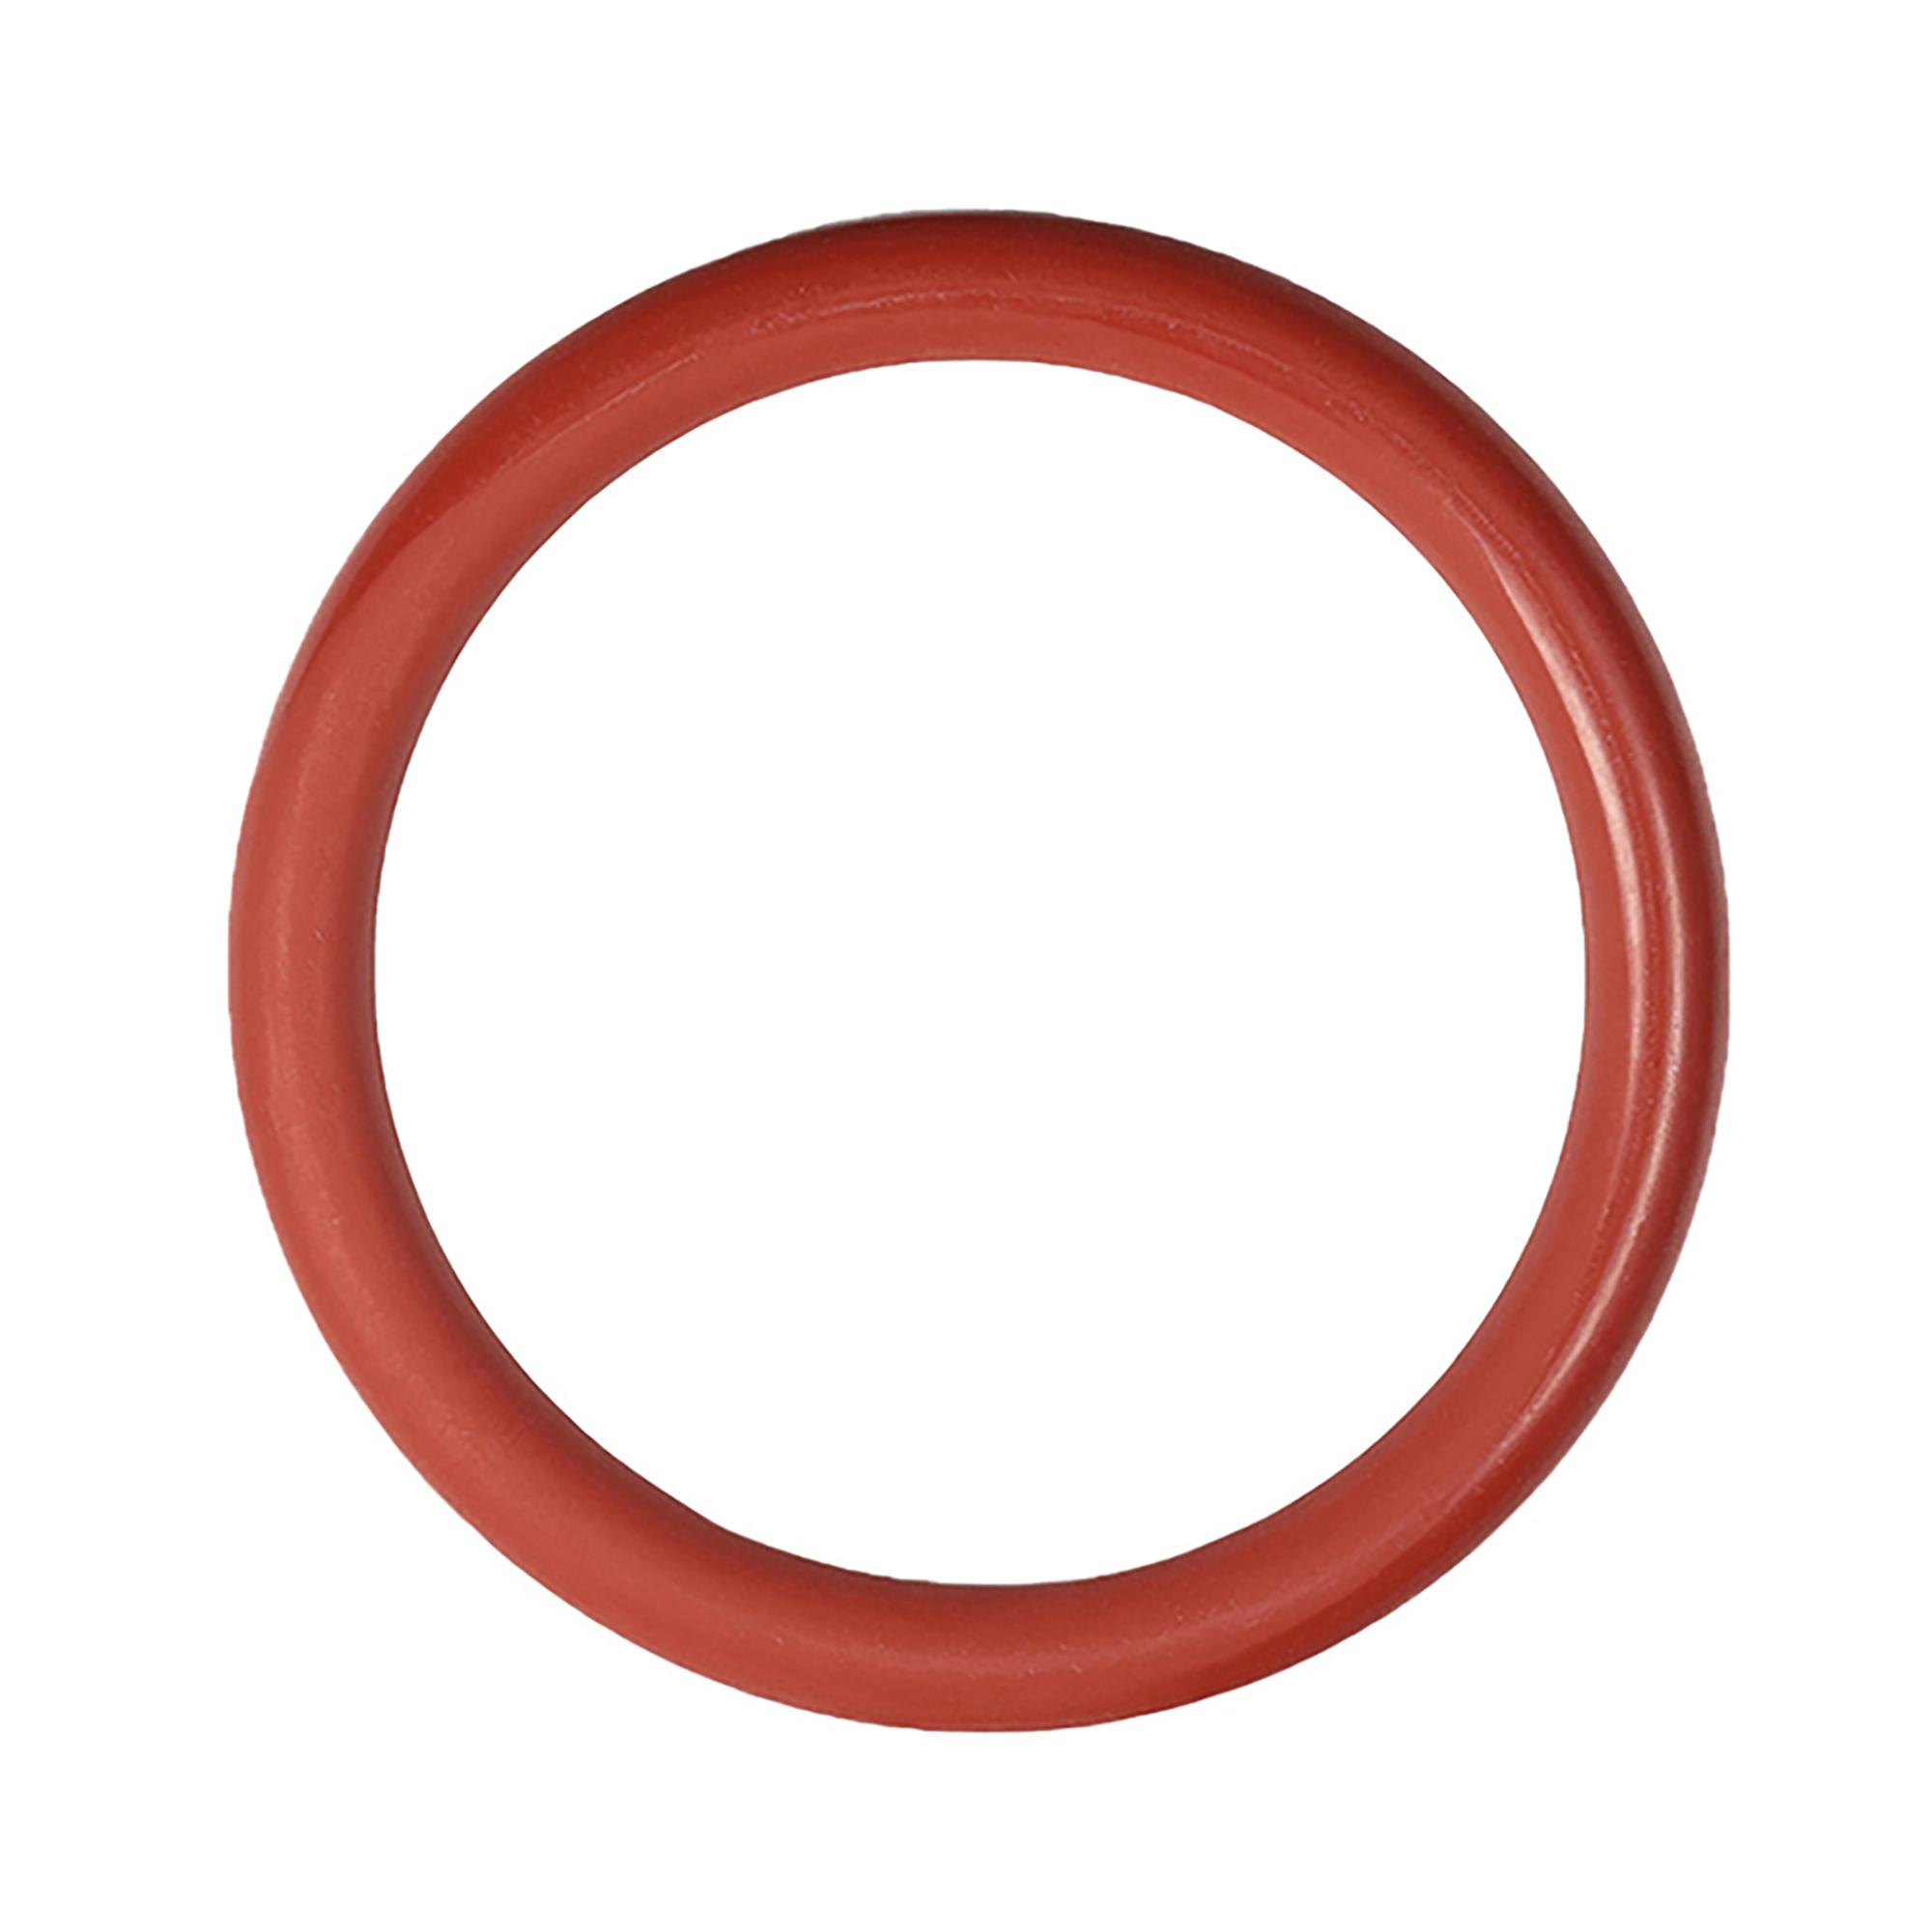 In werkelijkheid filter kijken O-Ring/ Dichtung am Kolben der Brühgruppe 36,1 x 3,53mm